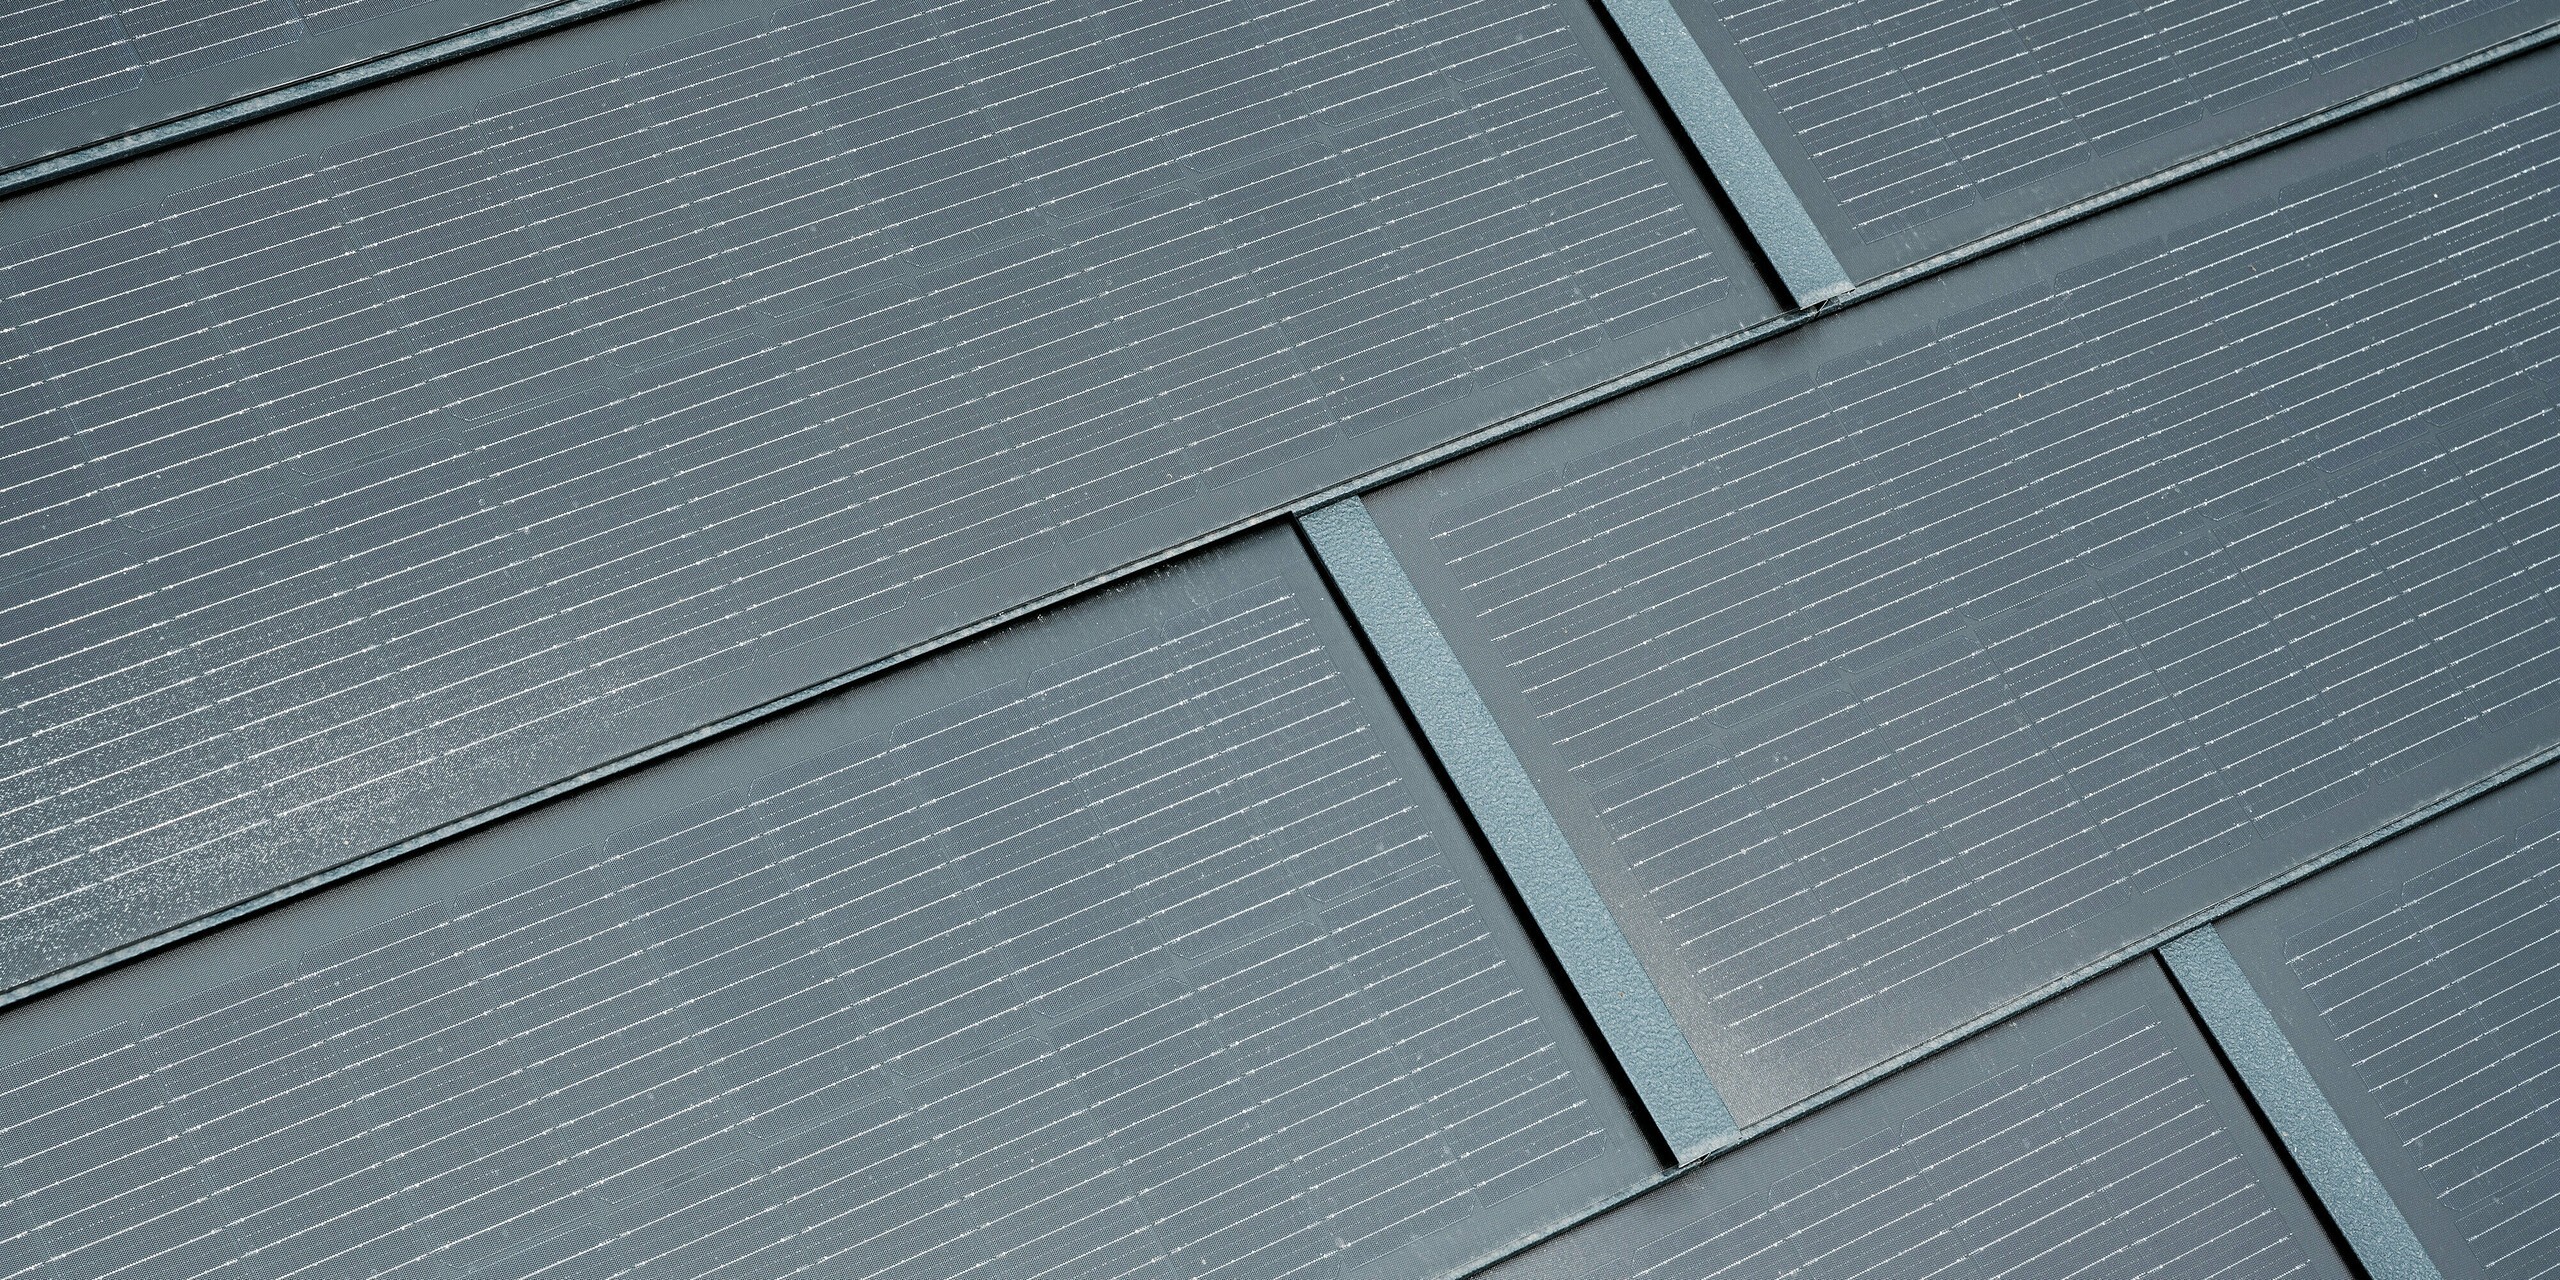 Podroben pogled PREFA solarnih strešnih plošč v antracitni barvi. Fine linije sončnih celic so jasno vidne in se harmonično prilegajo celotnemu dizajnu. Ta privlačna integracija solarne tehnologije v strešno kritino združuje funkcionalnost s sodobno estetiko in zagotavlja okolju prijazen vir energije za stavbe.